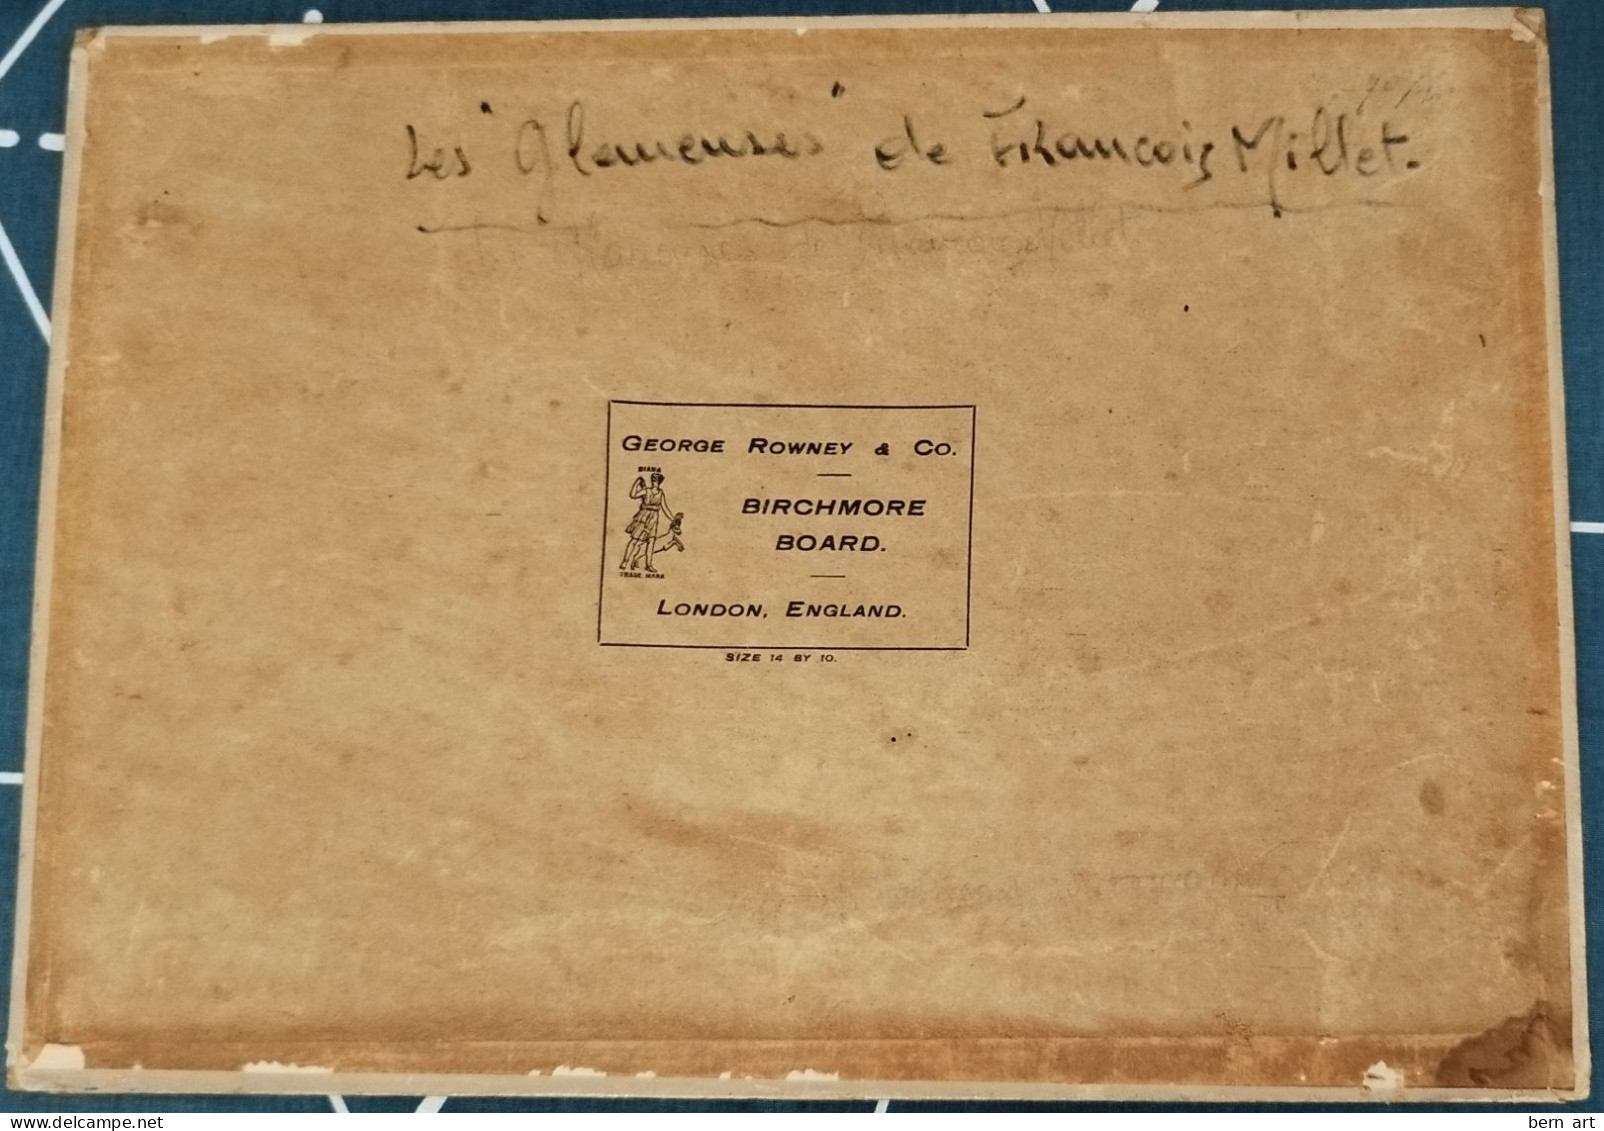 A. Rubin. Copie ancienne du tableau "Les Glaneuses" de François Millet sur carton George Rowney London England